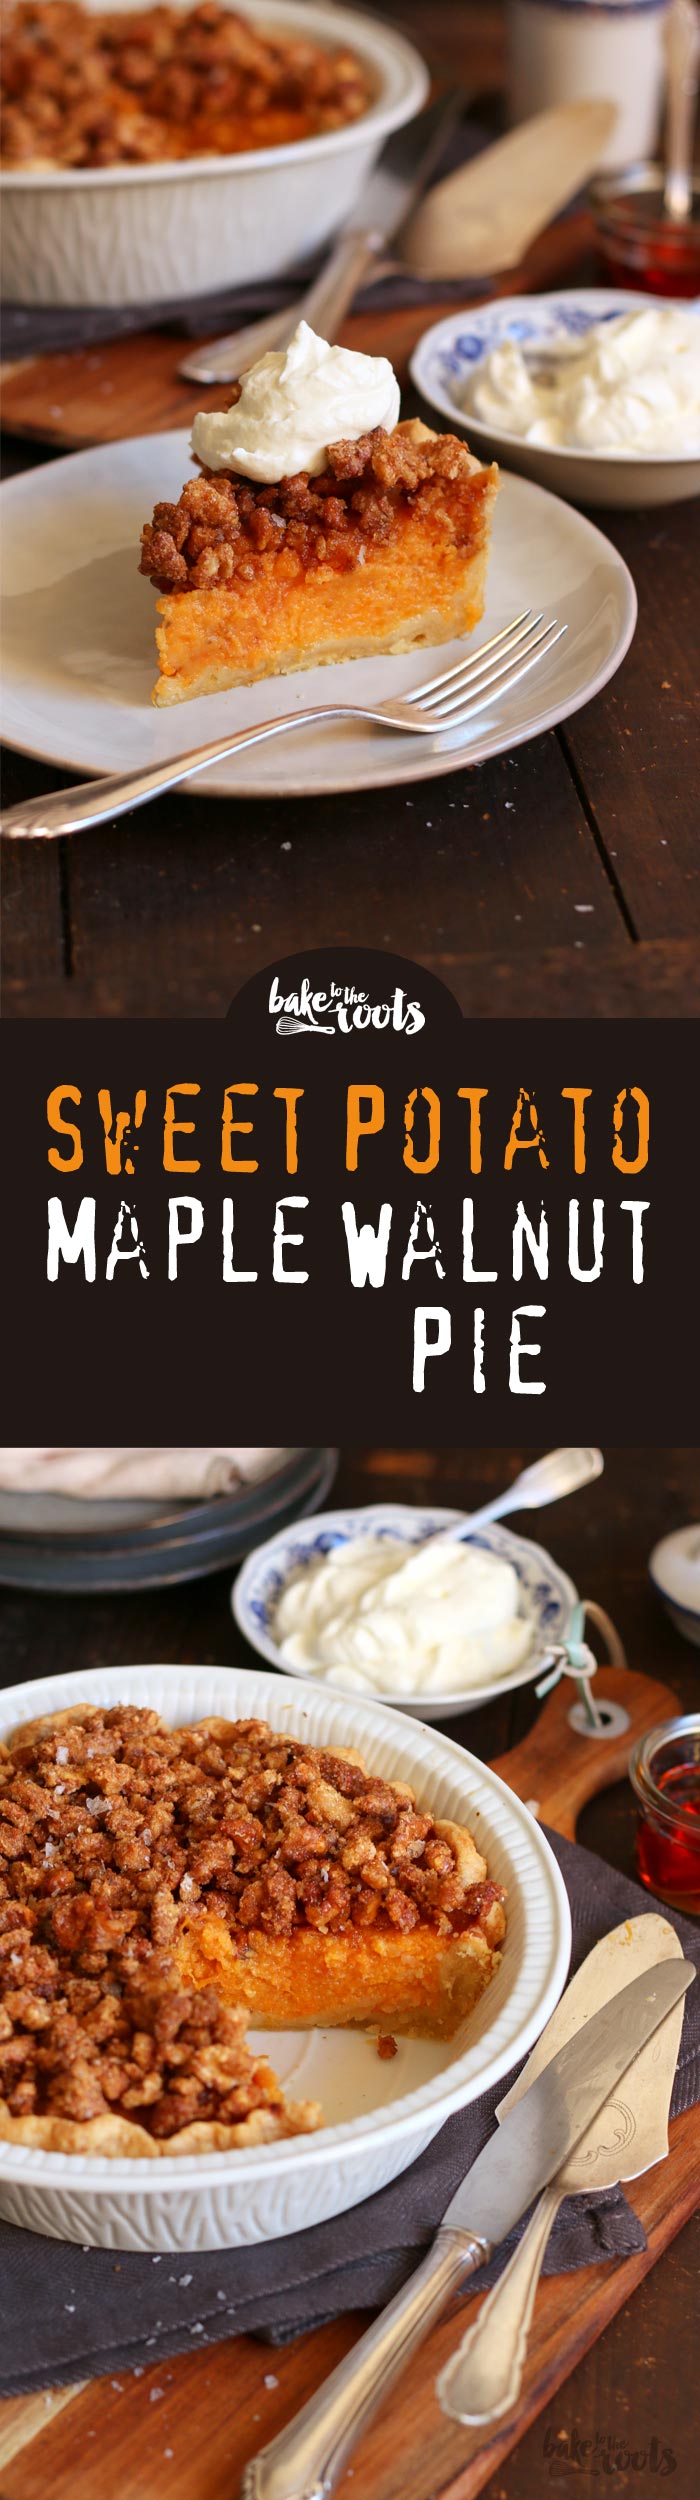 Leckerer Sweet Potato Pie mit glasierten Walnüssen und Streuseln | Bake to the roots